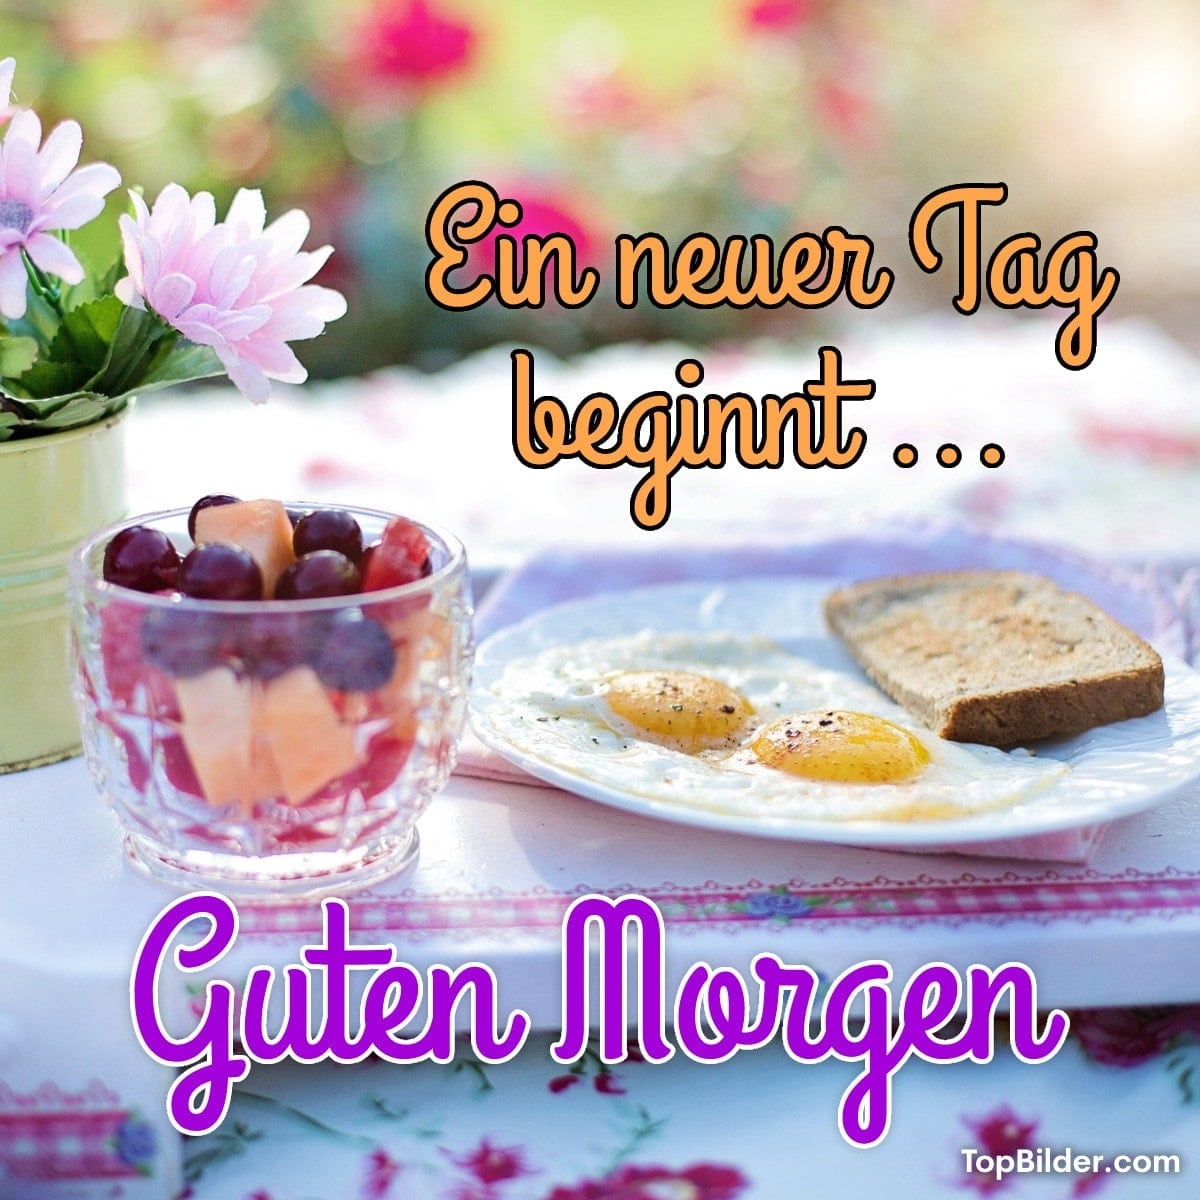 Frühstück im Garten mit Eiern, Brot und Obst. Text: Ein neuer Tag beginnt... Guten Morgen